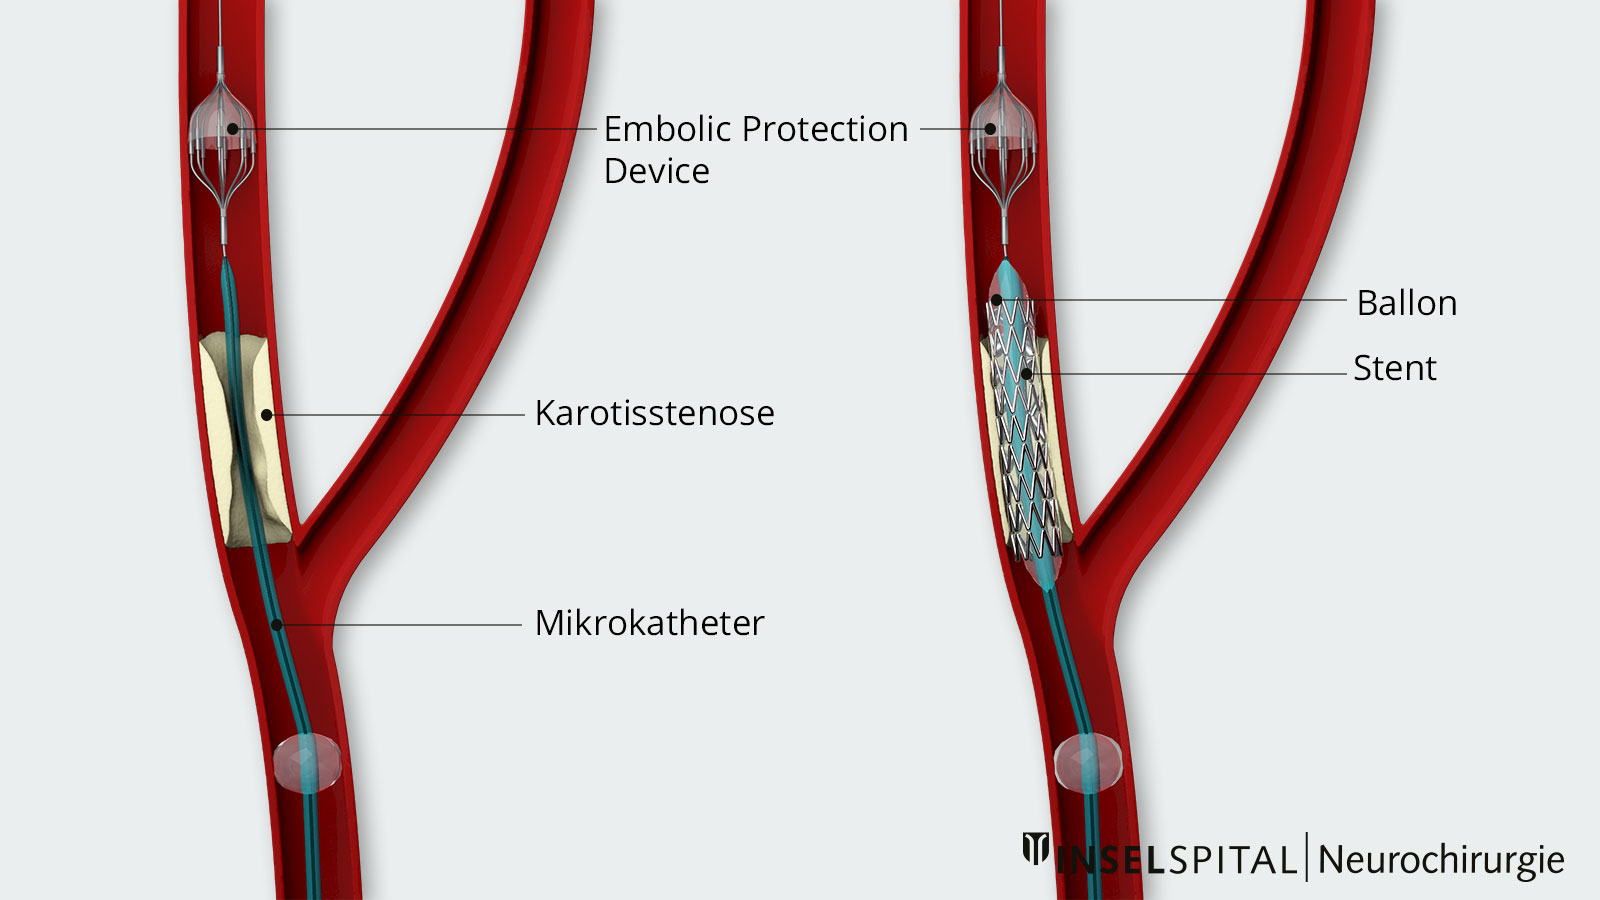 Dessin d'une dilatation par stent. A gauche, EPD (Embolic Protection Device) déployé, à droite, pose de stent et dilatation au ballonnet.